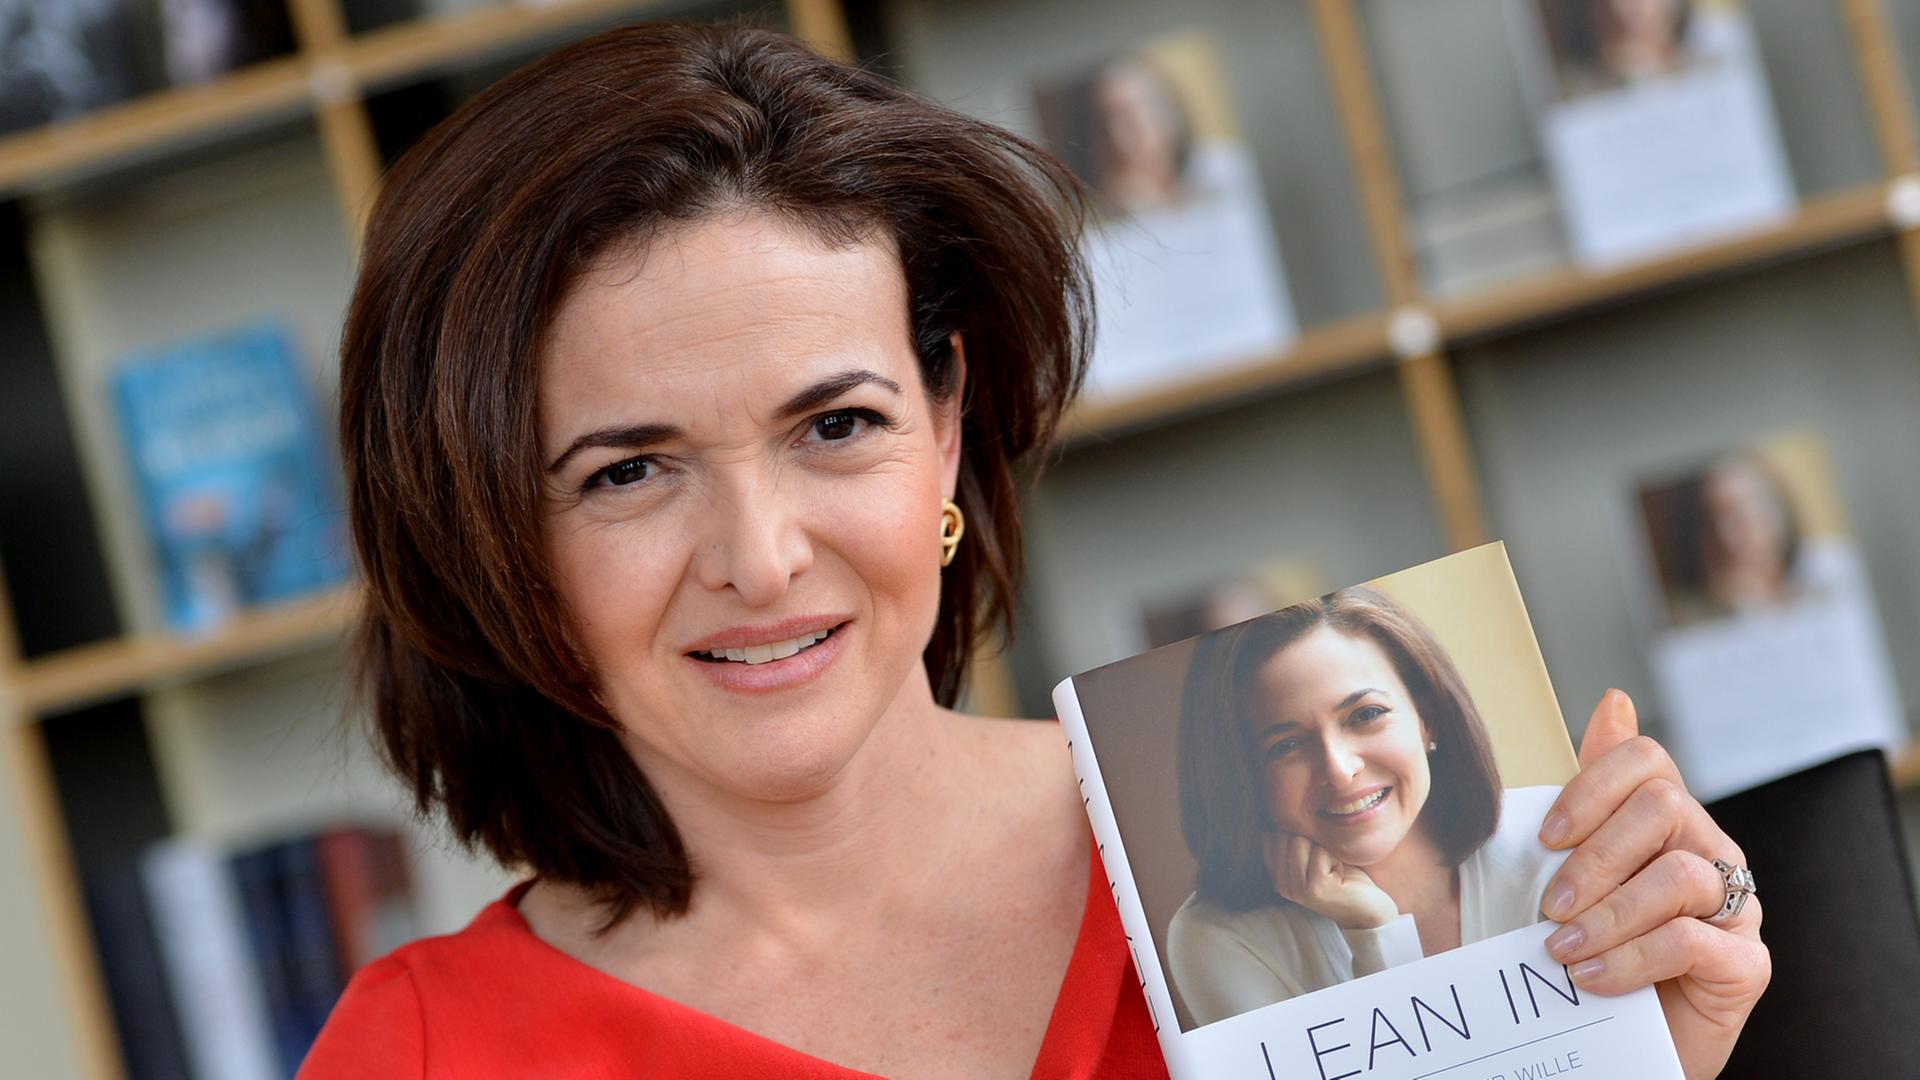 Sheryl Sandberg in rotem Kleid hält ein Buch mit dem Titel "Lean In" in die Kamera, auf dem Cover ist ihr Gesicht abgebildet.